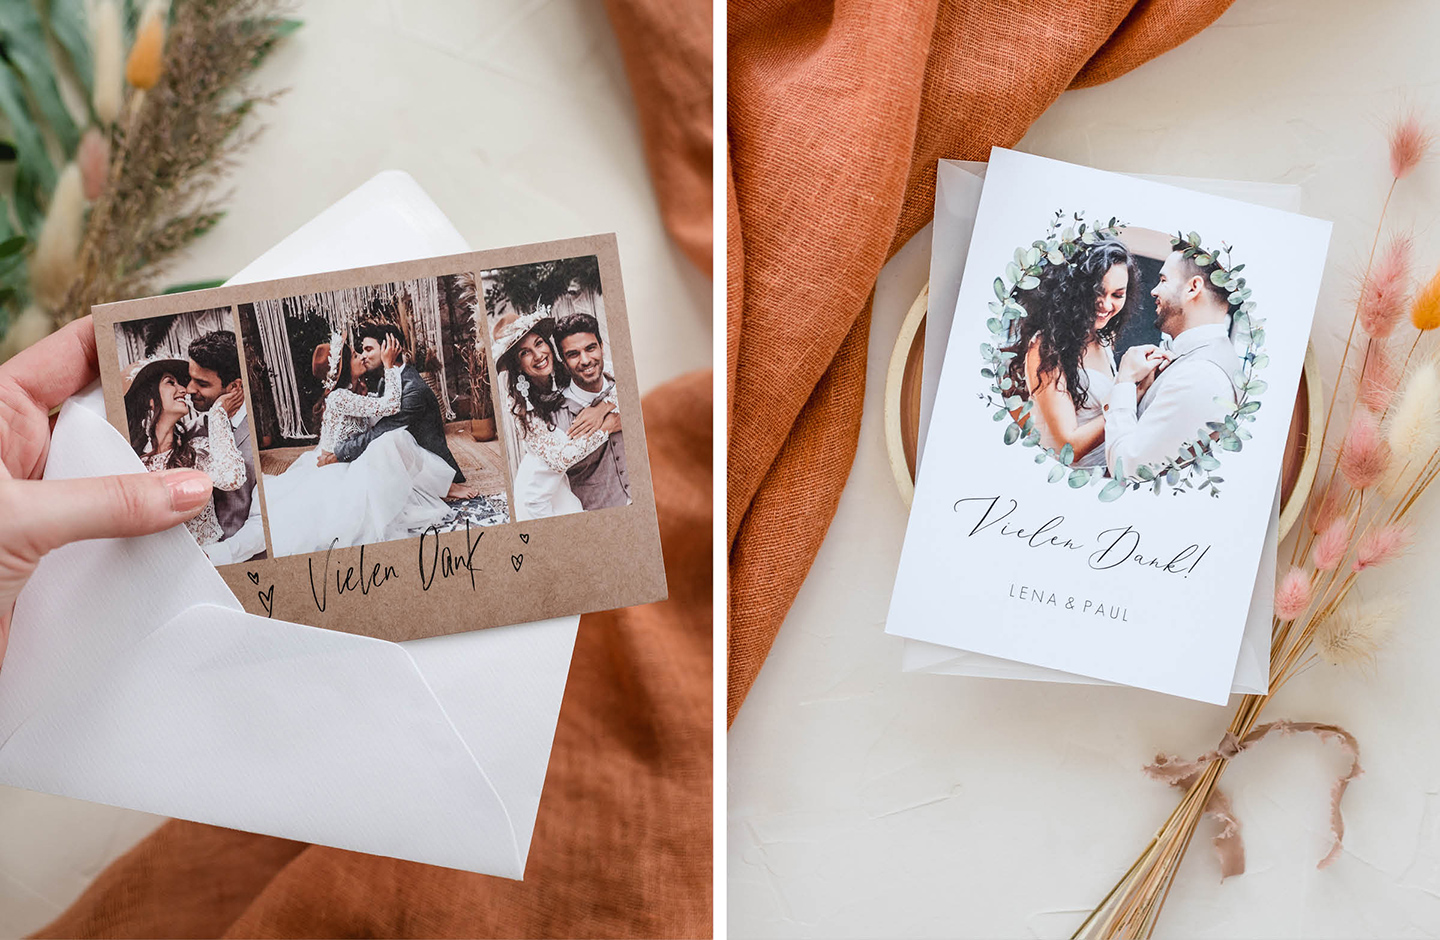 Dankeskarten zur Hochzeit im modernen Design mit Bild des Brautpaares.